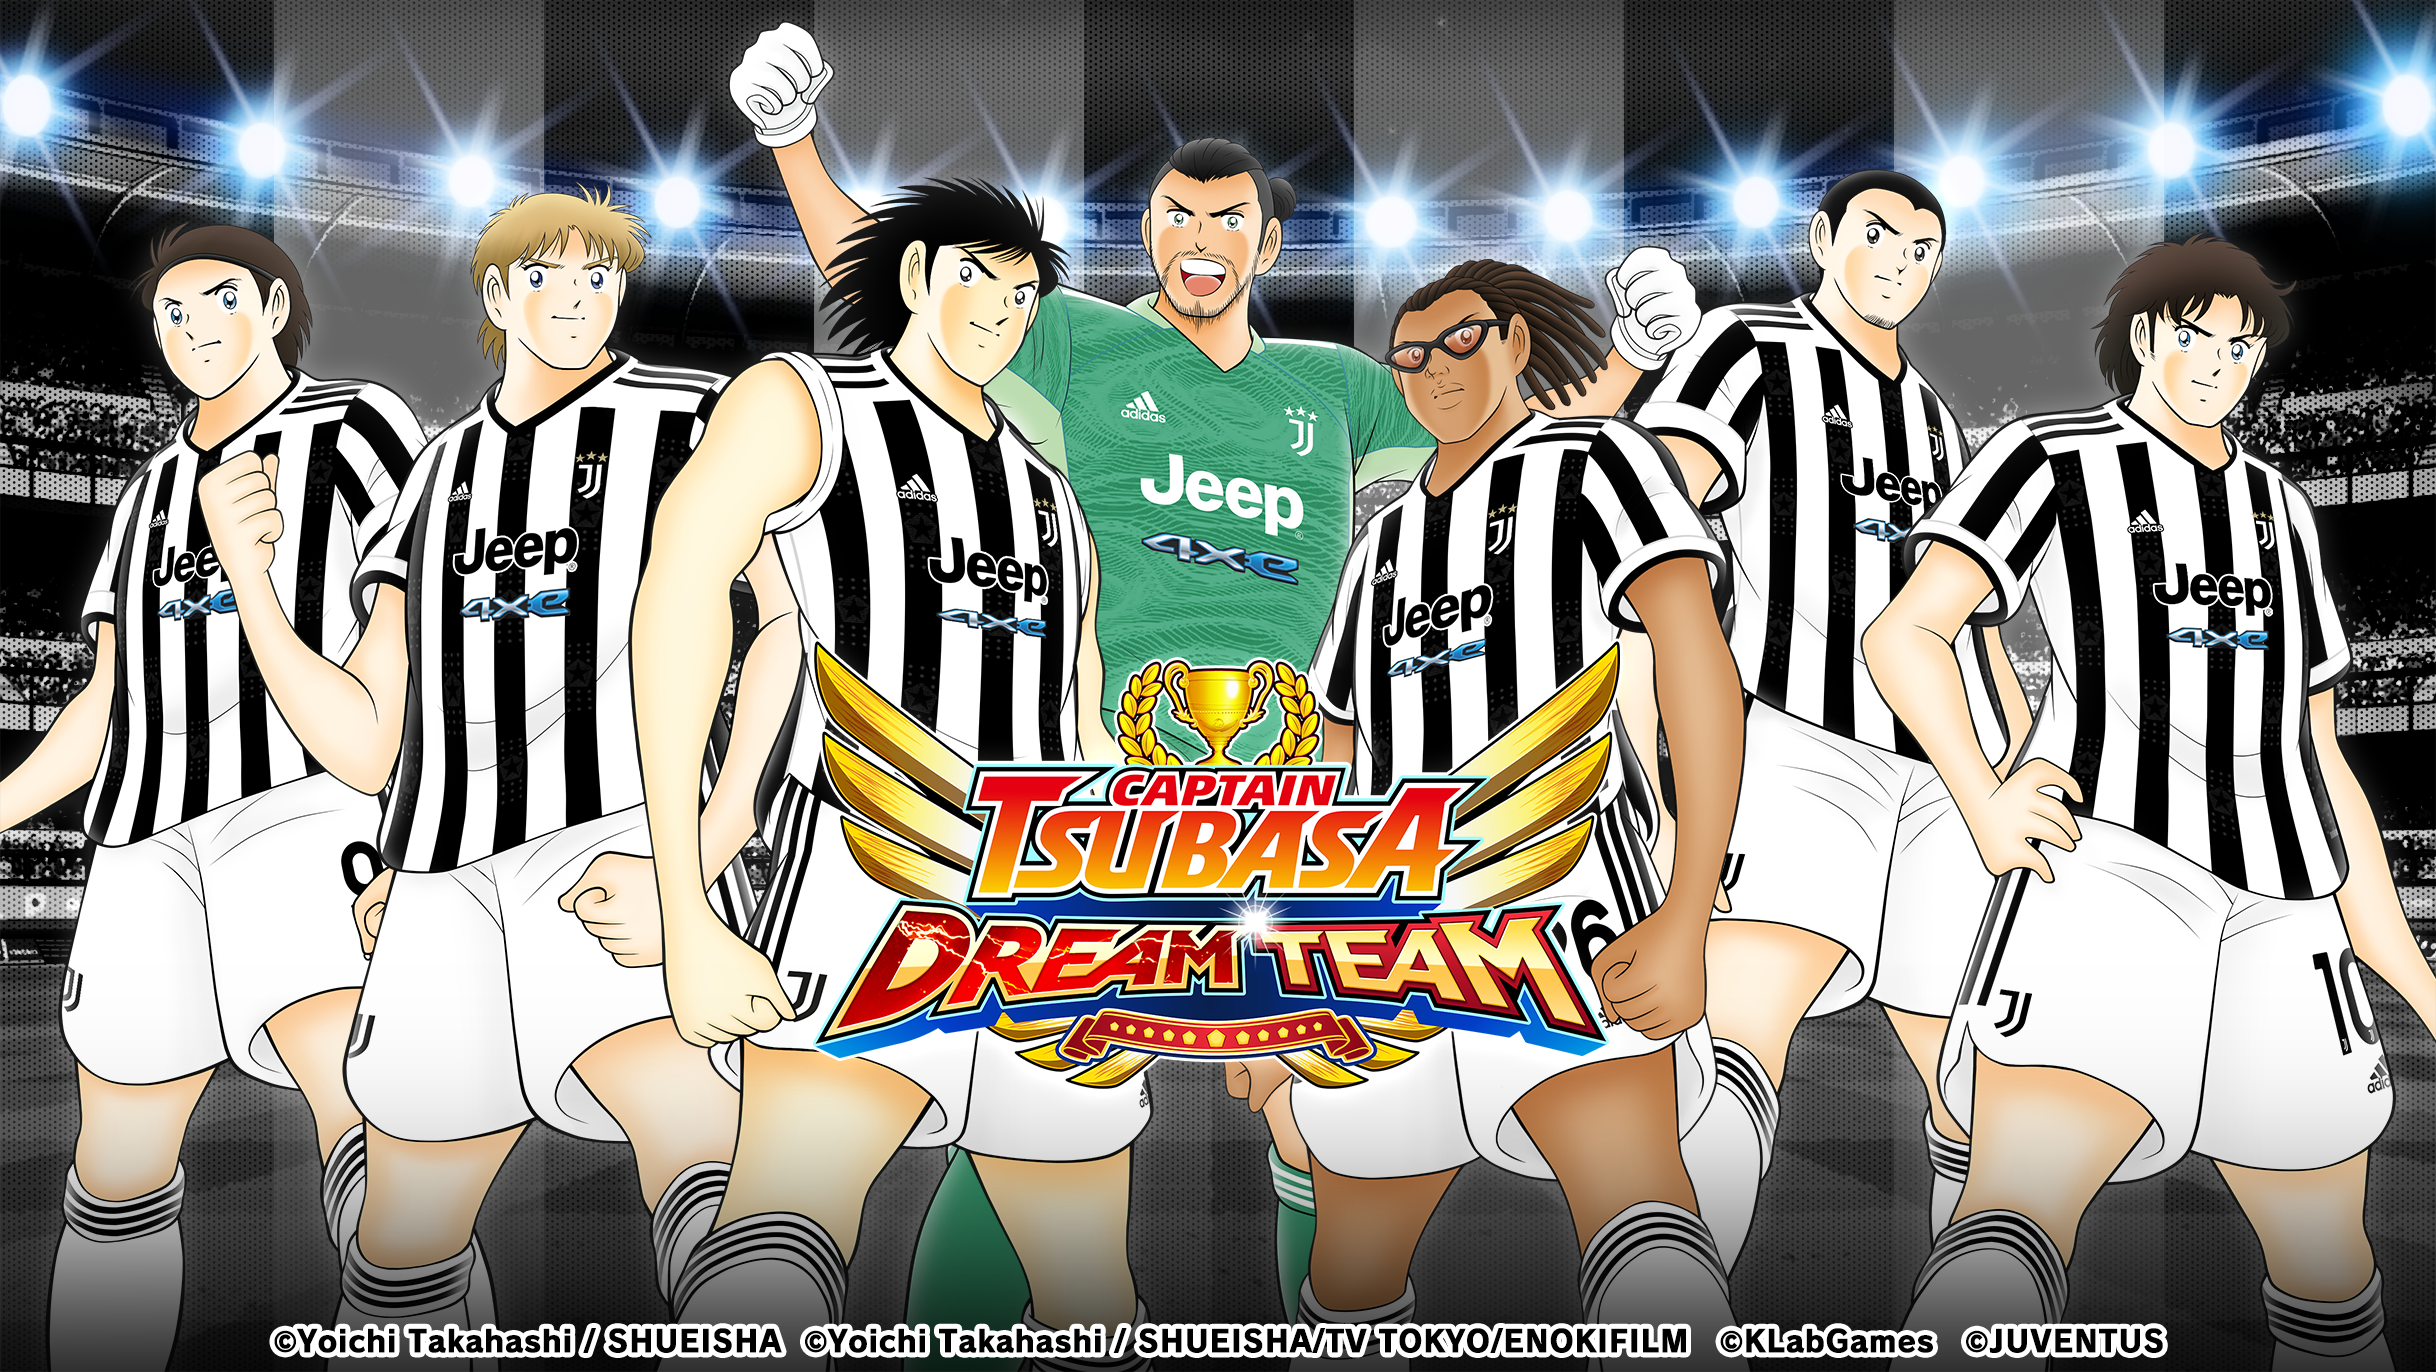 Captain Tsubasa: Dream Team” Captain Tsubasa 40th x 4th game anniversary  campaign kicks off! - ANTARA News